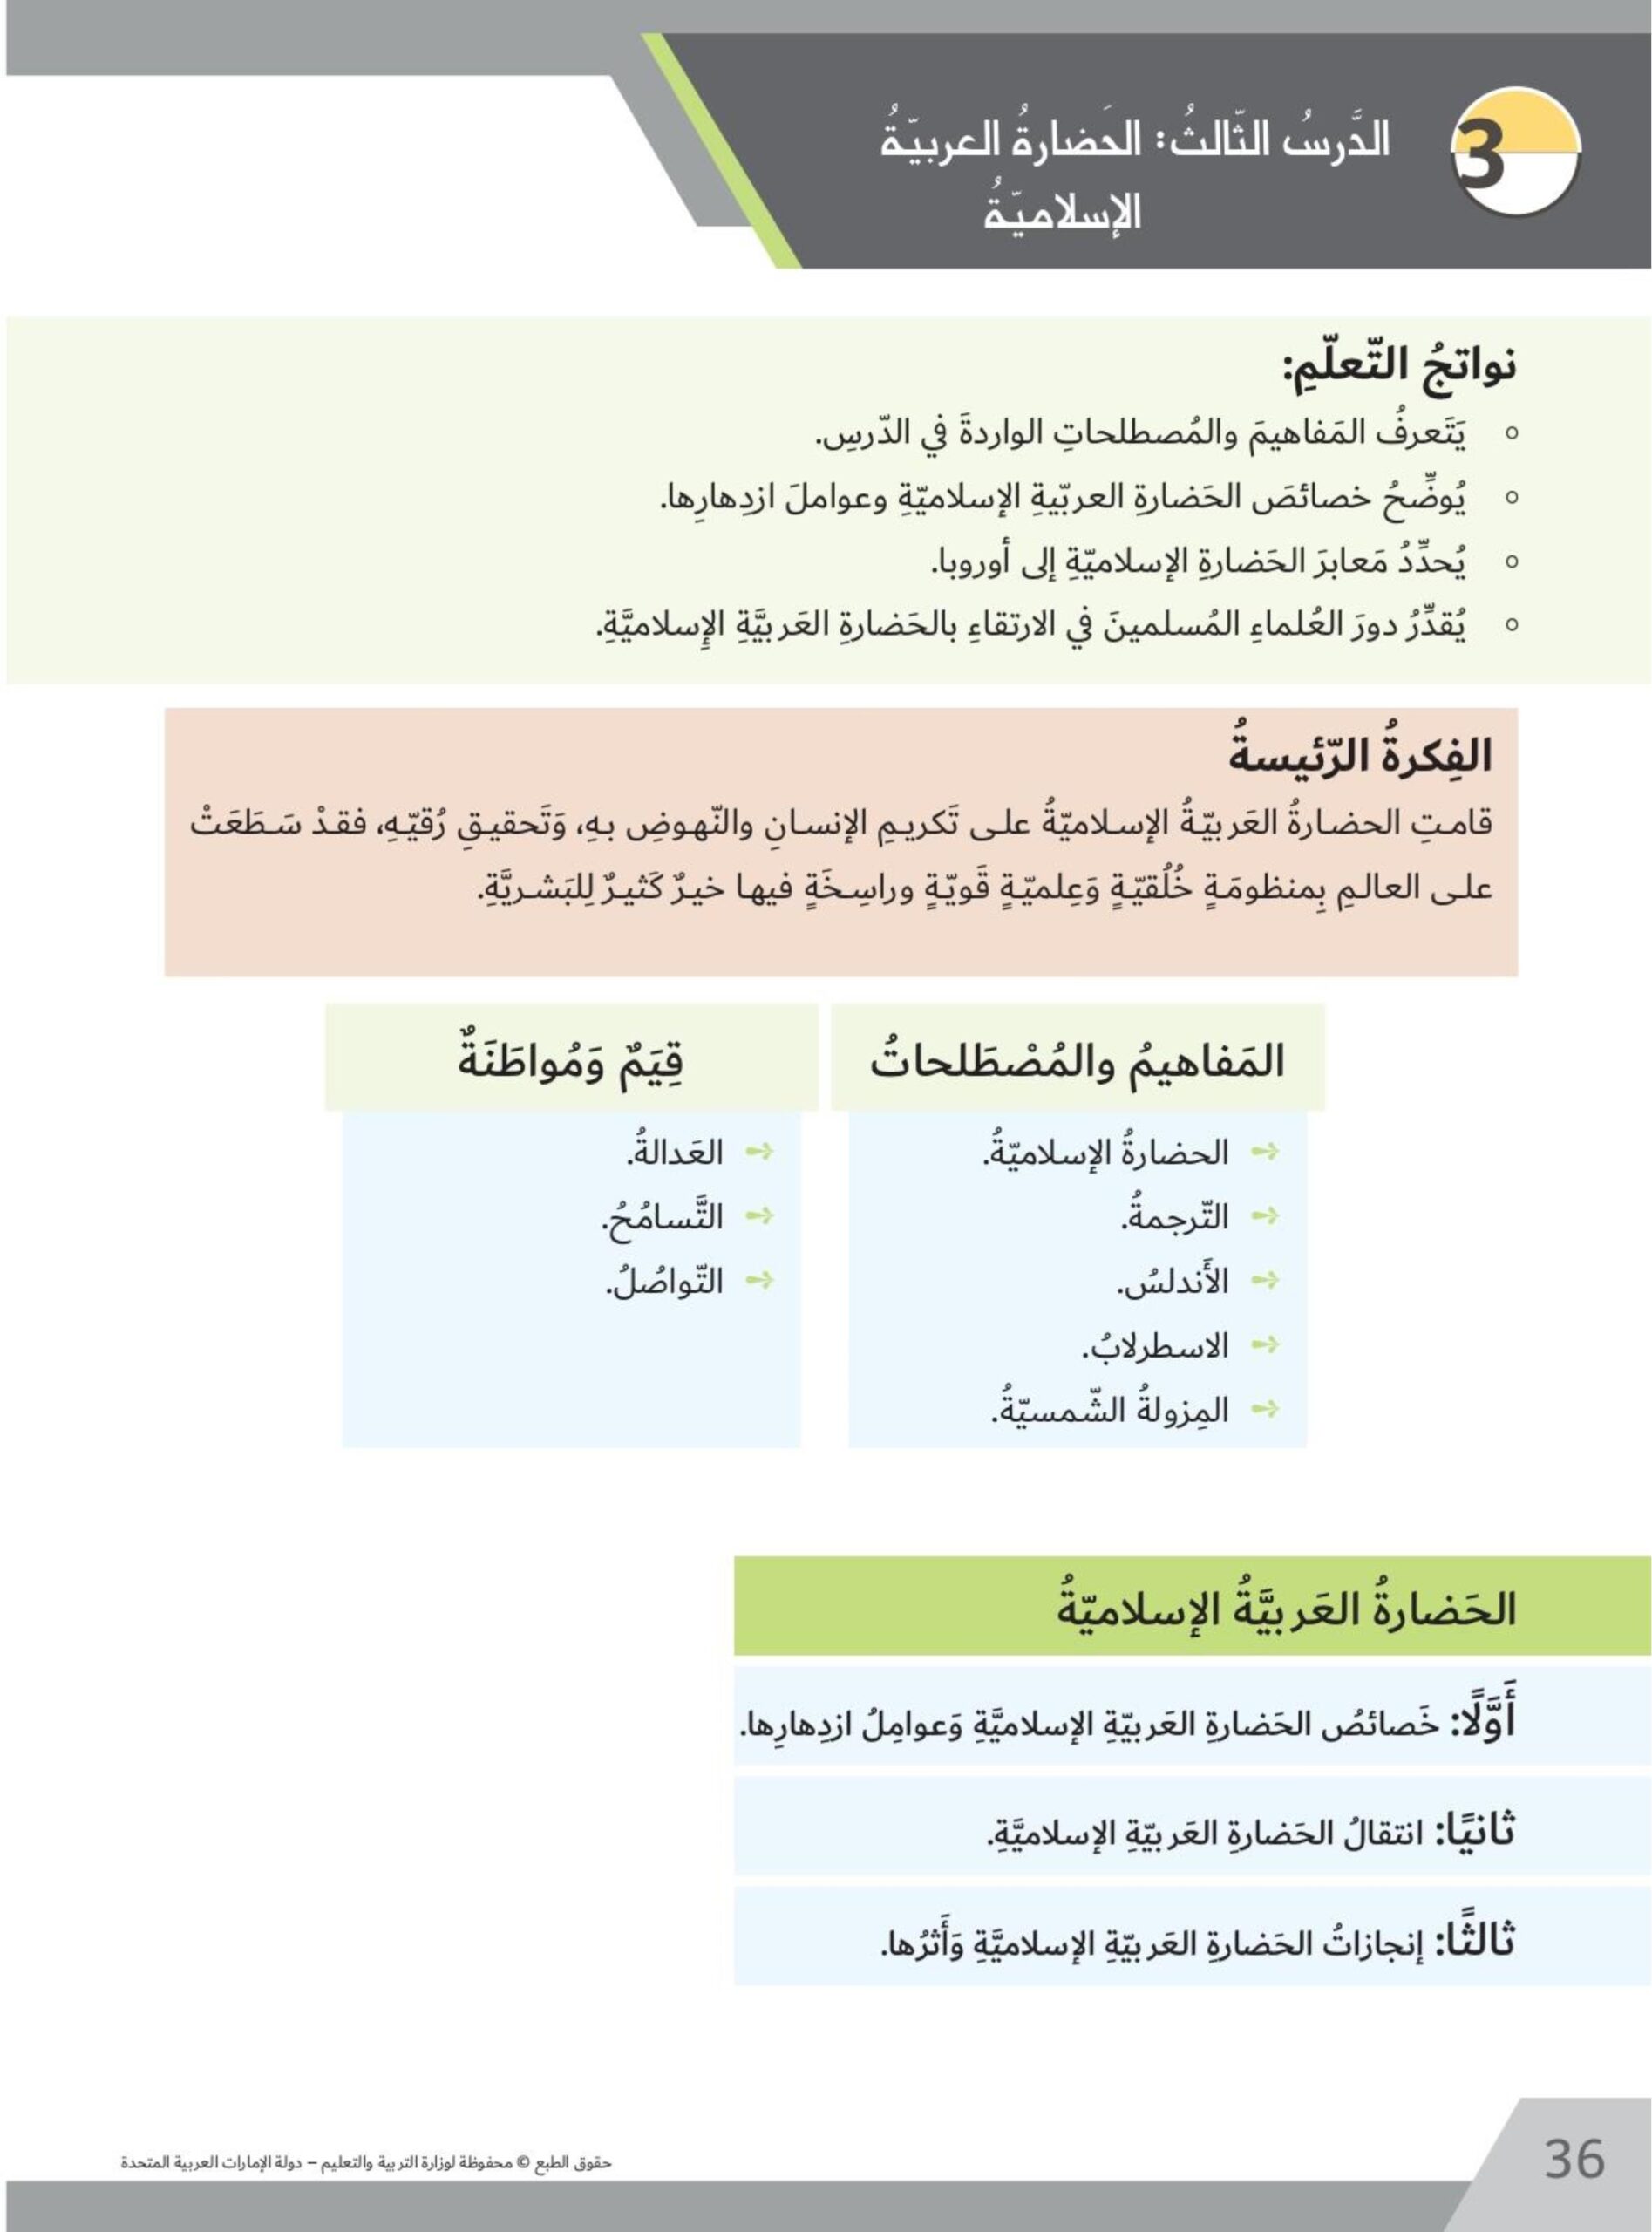 حل درس الحضارة العربية الإسلامية كتاب الطالب الدراسات الإجتماعية والتربية الوطنية الصف الثامن